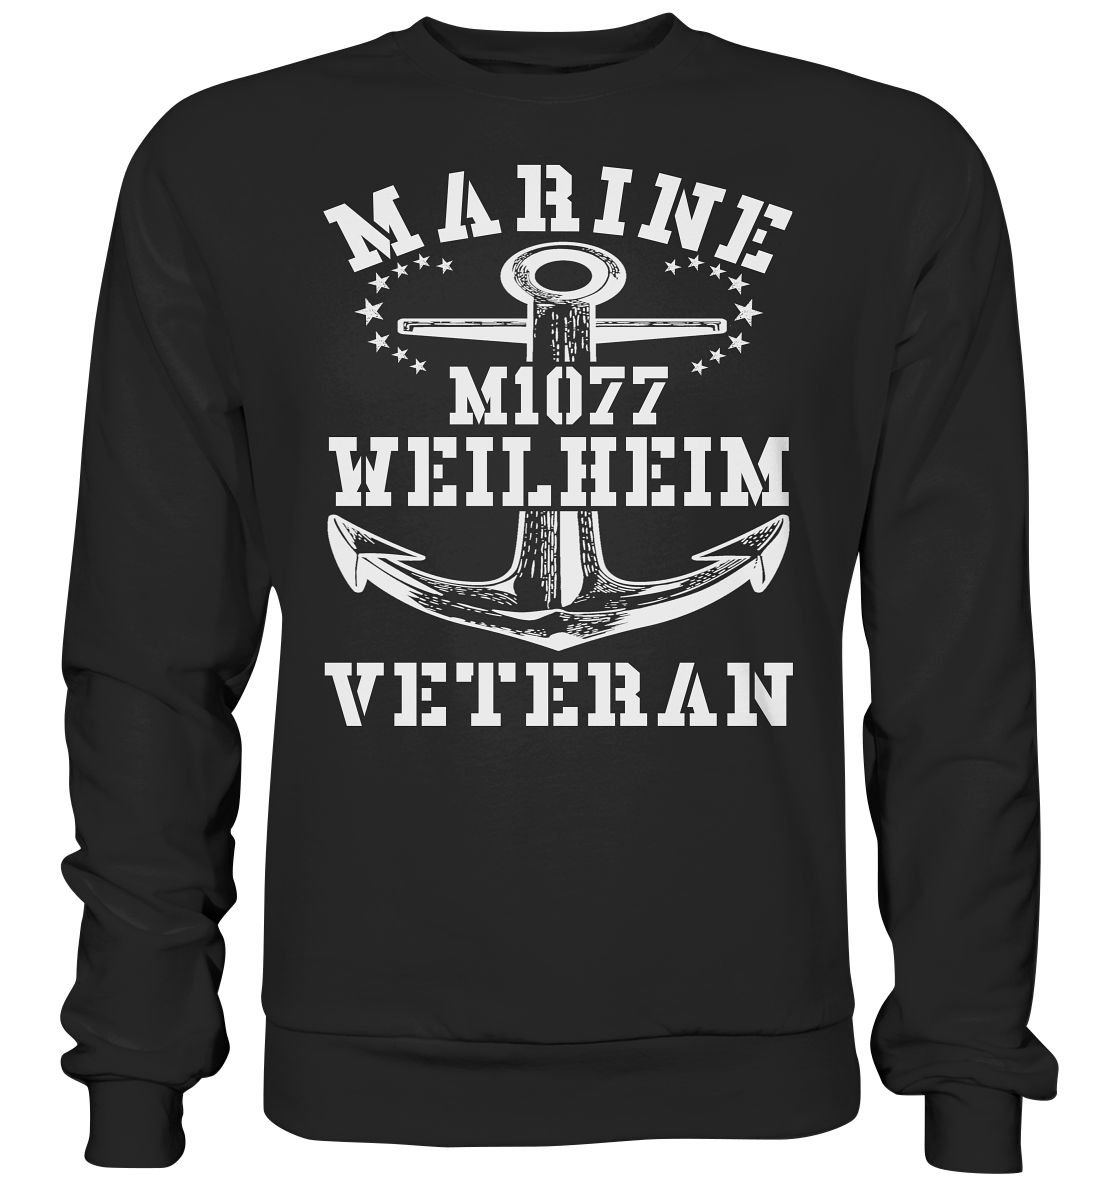 MARINE VETERAN M1077 WEILHEIM - Premium Sweatshirt